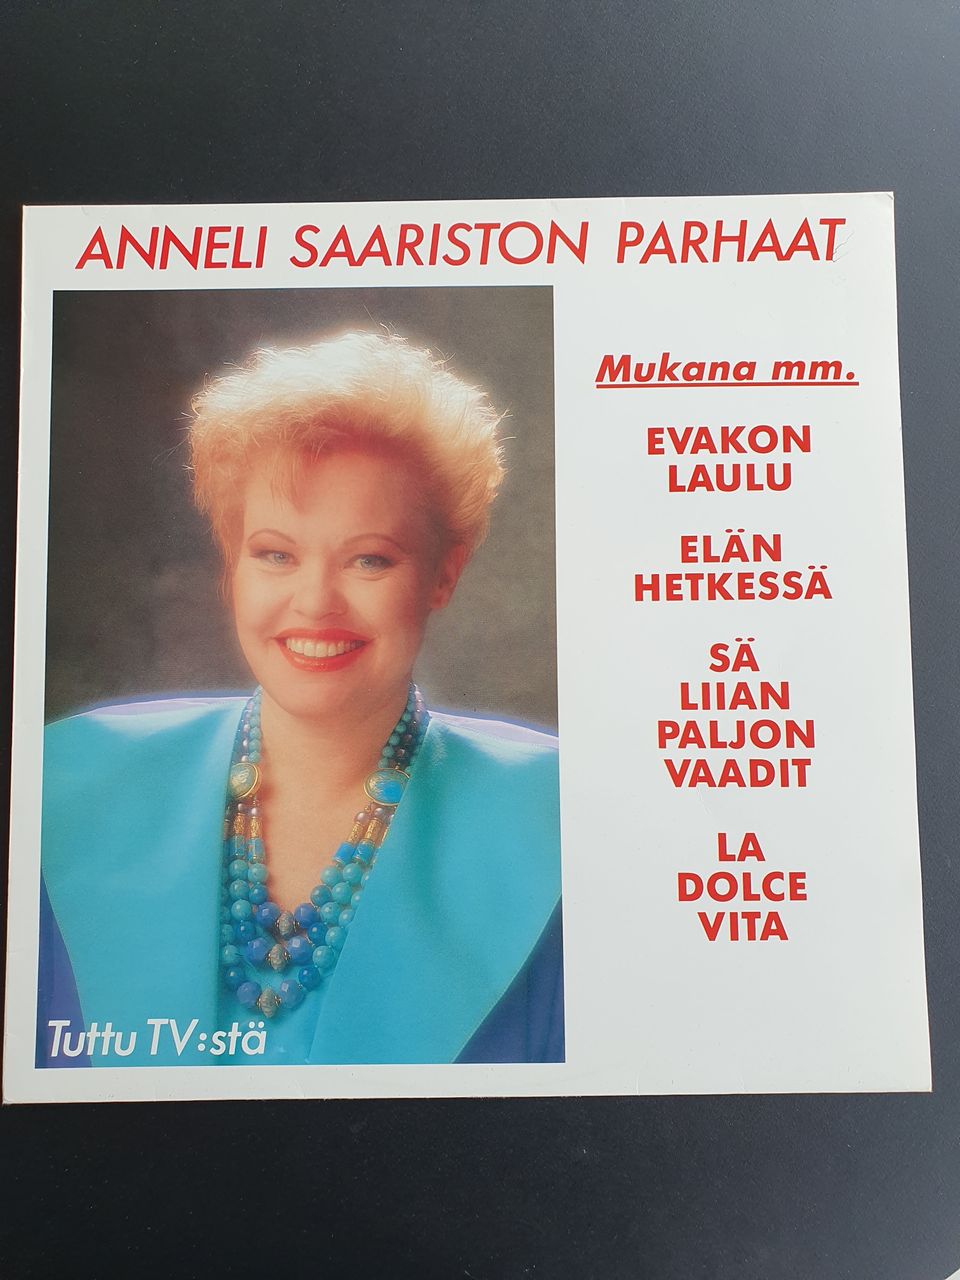 Anneli Saaristo. Parhaat LP.